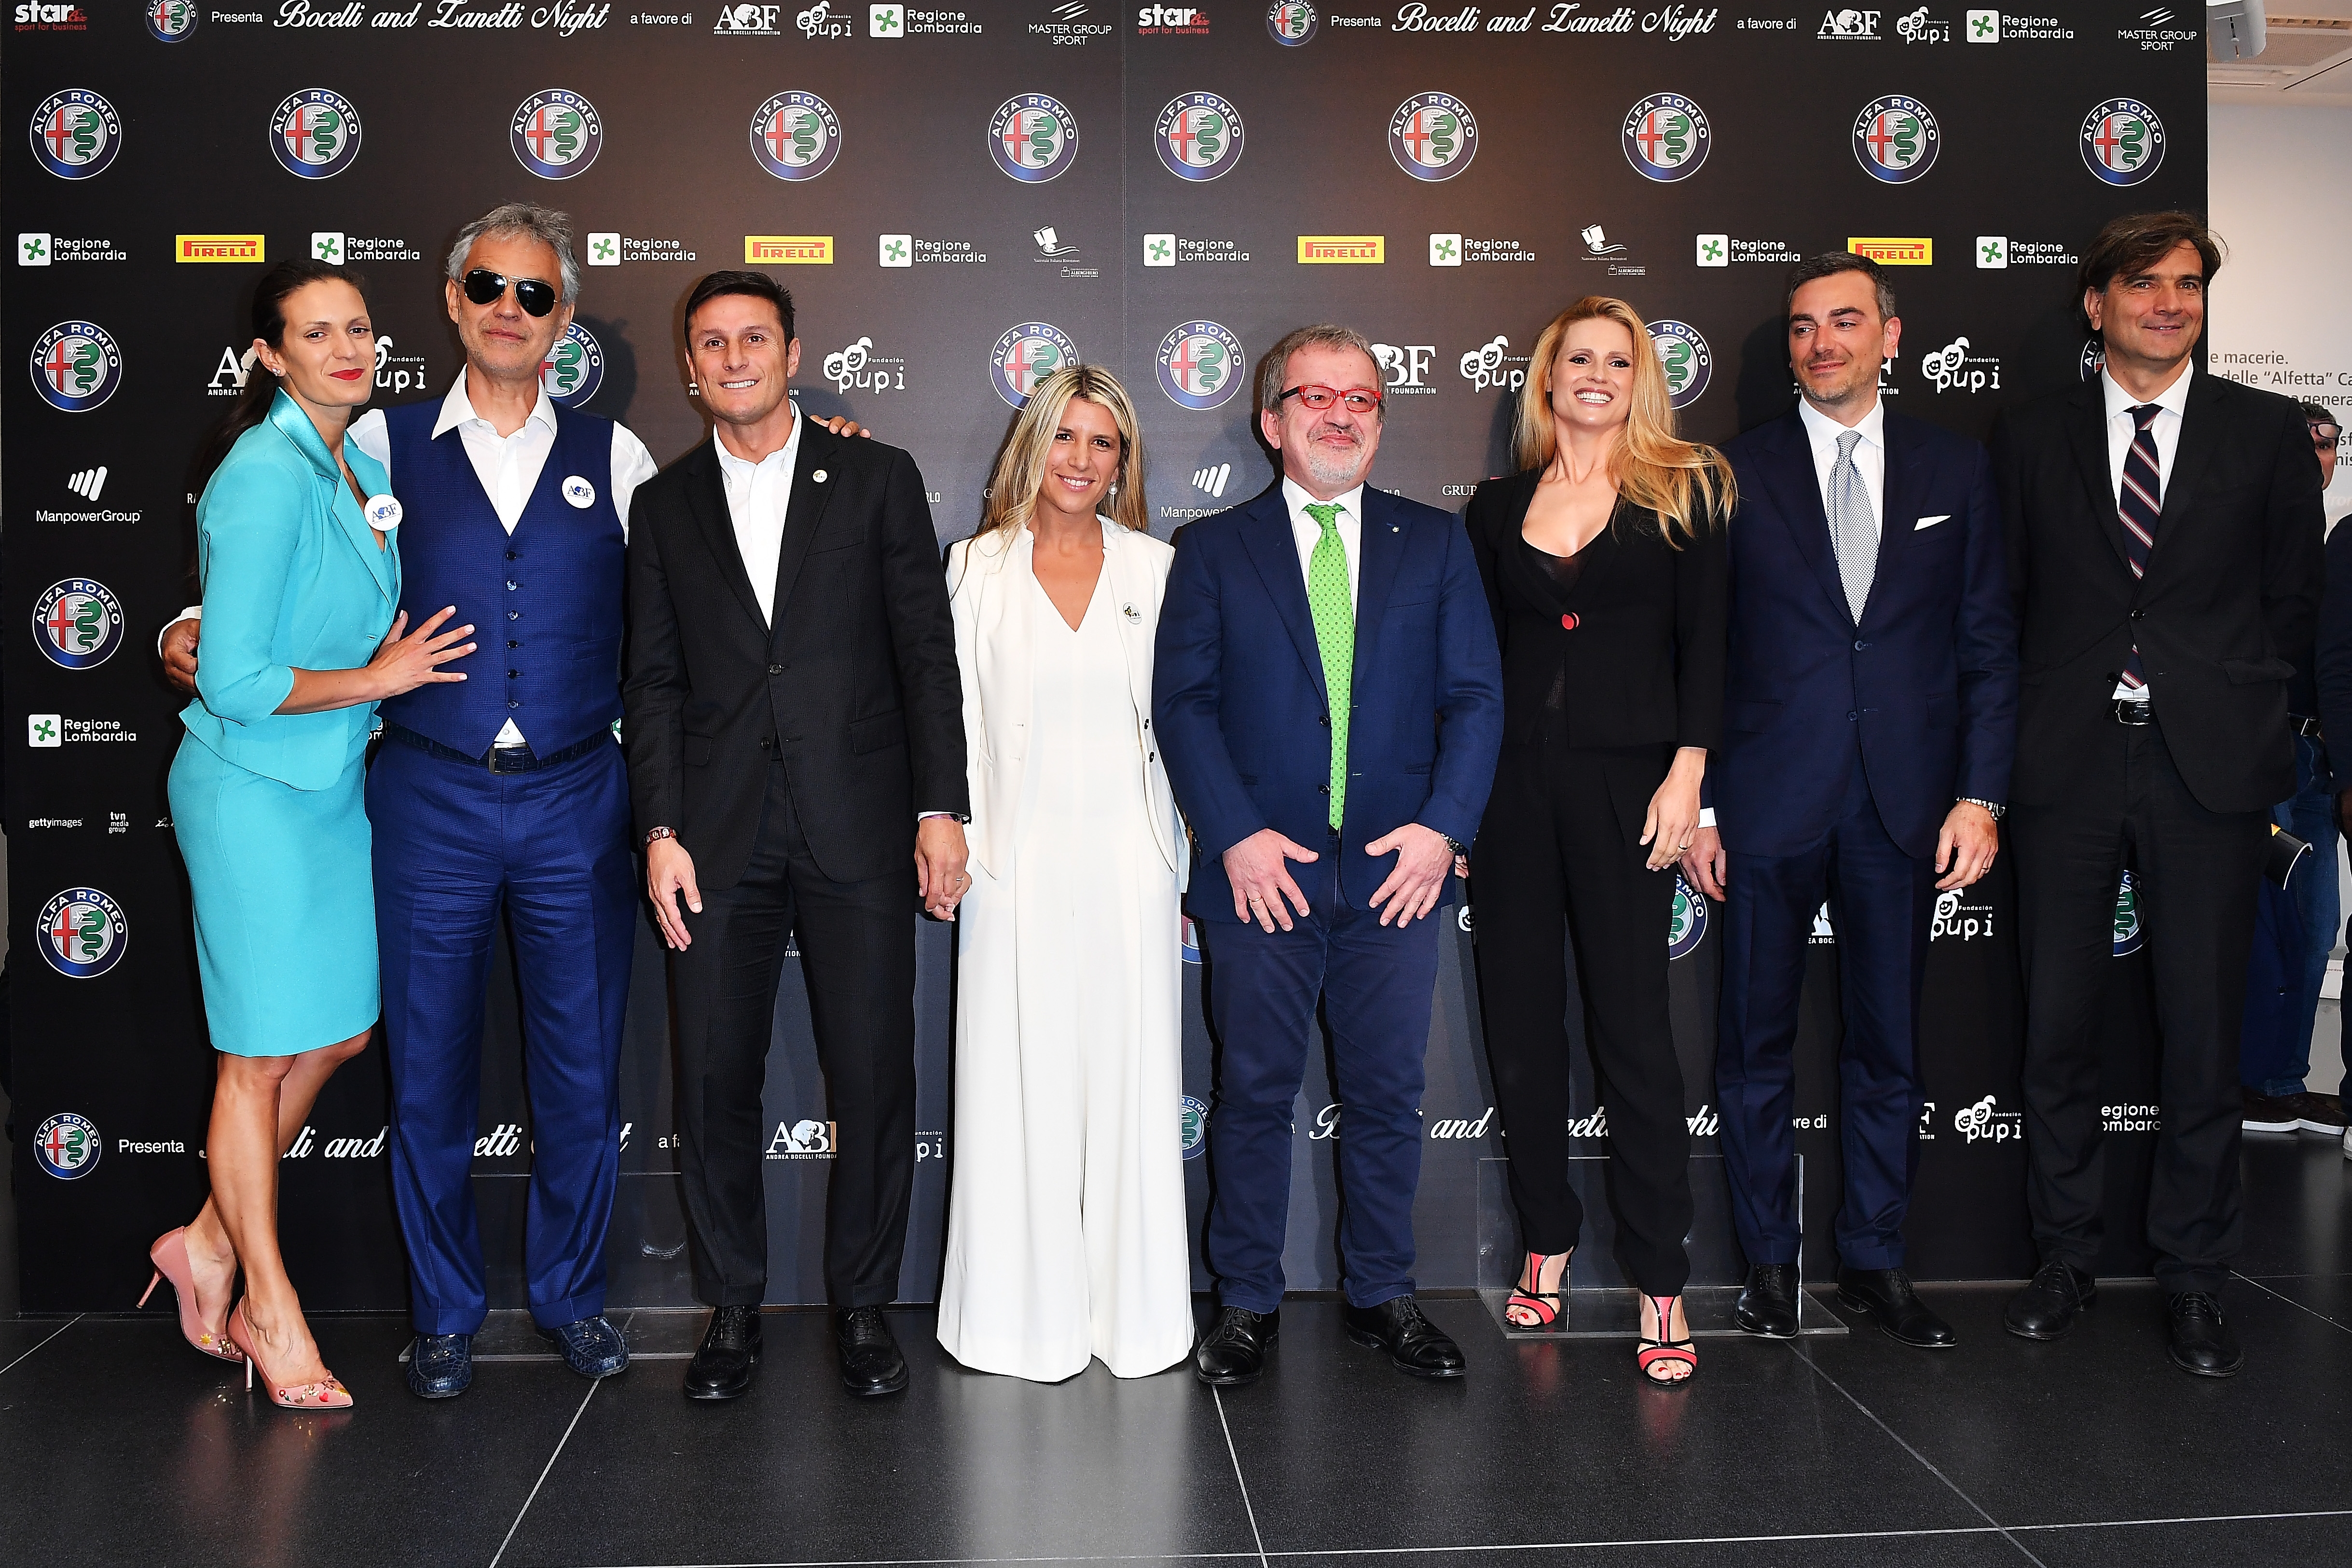 Bocelli and Zanetti Night: Alfa Romeo è Sponsor dell’evento benefico